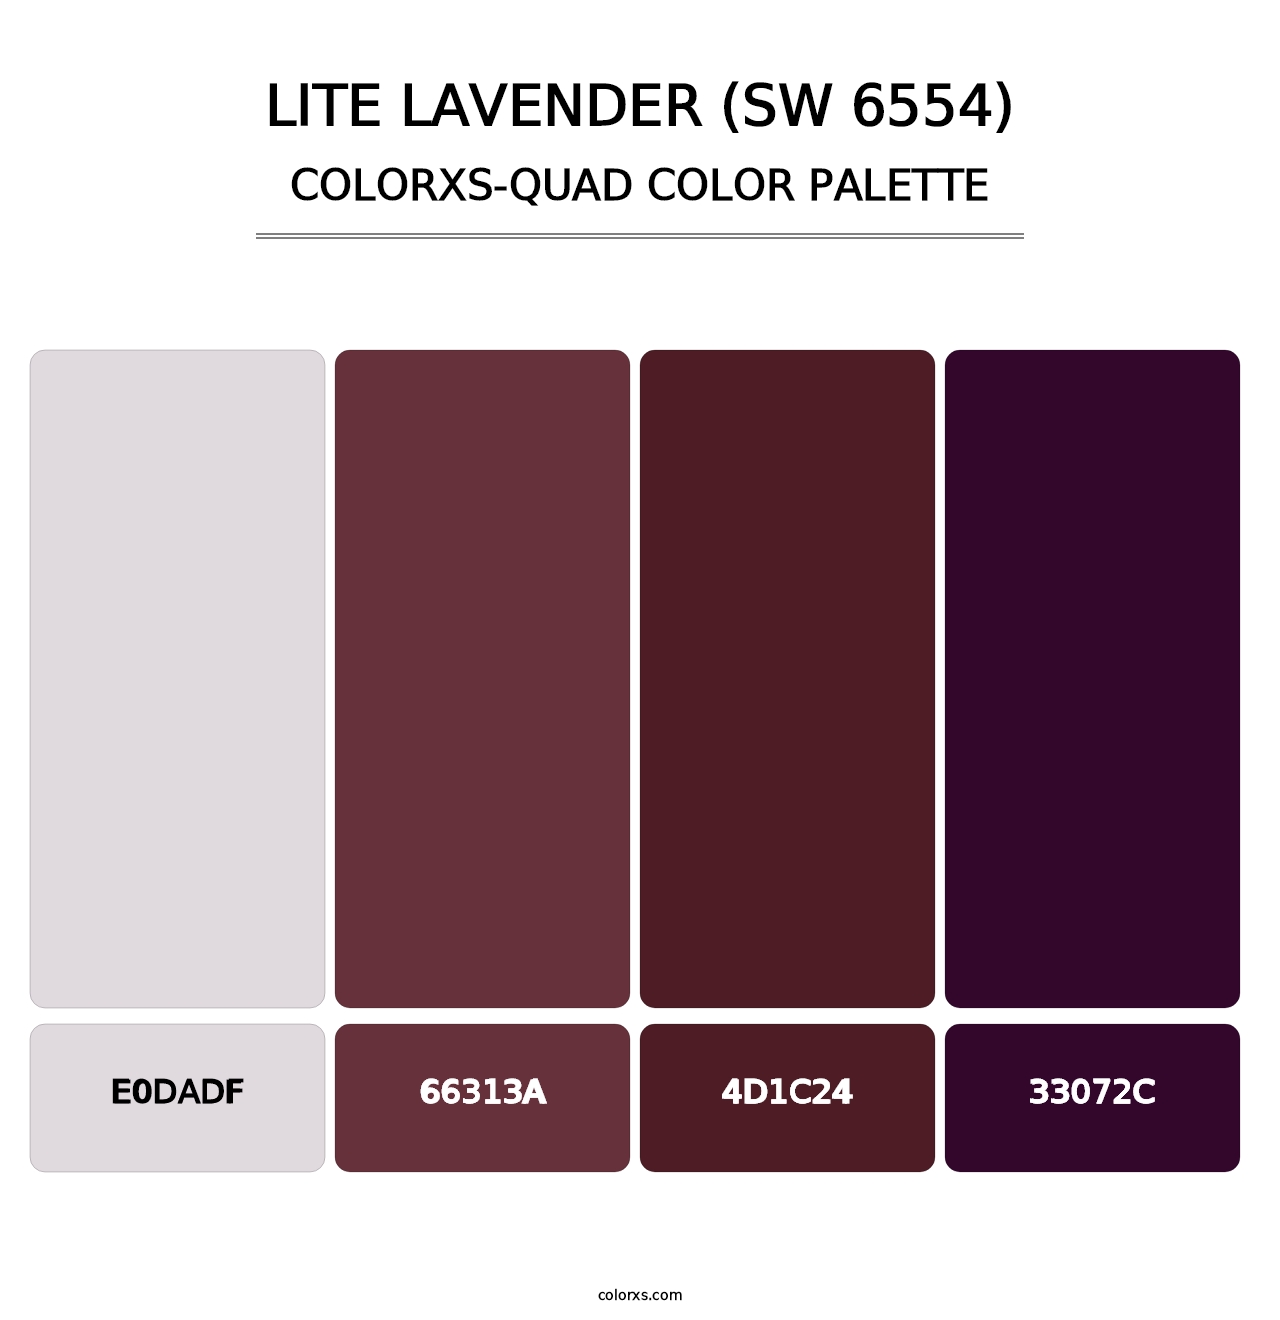 Lite Lavender (SW 6554) - Colorxs Quad Palette